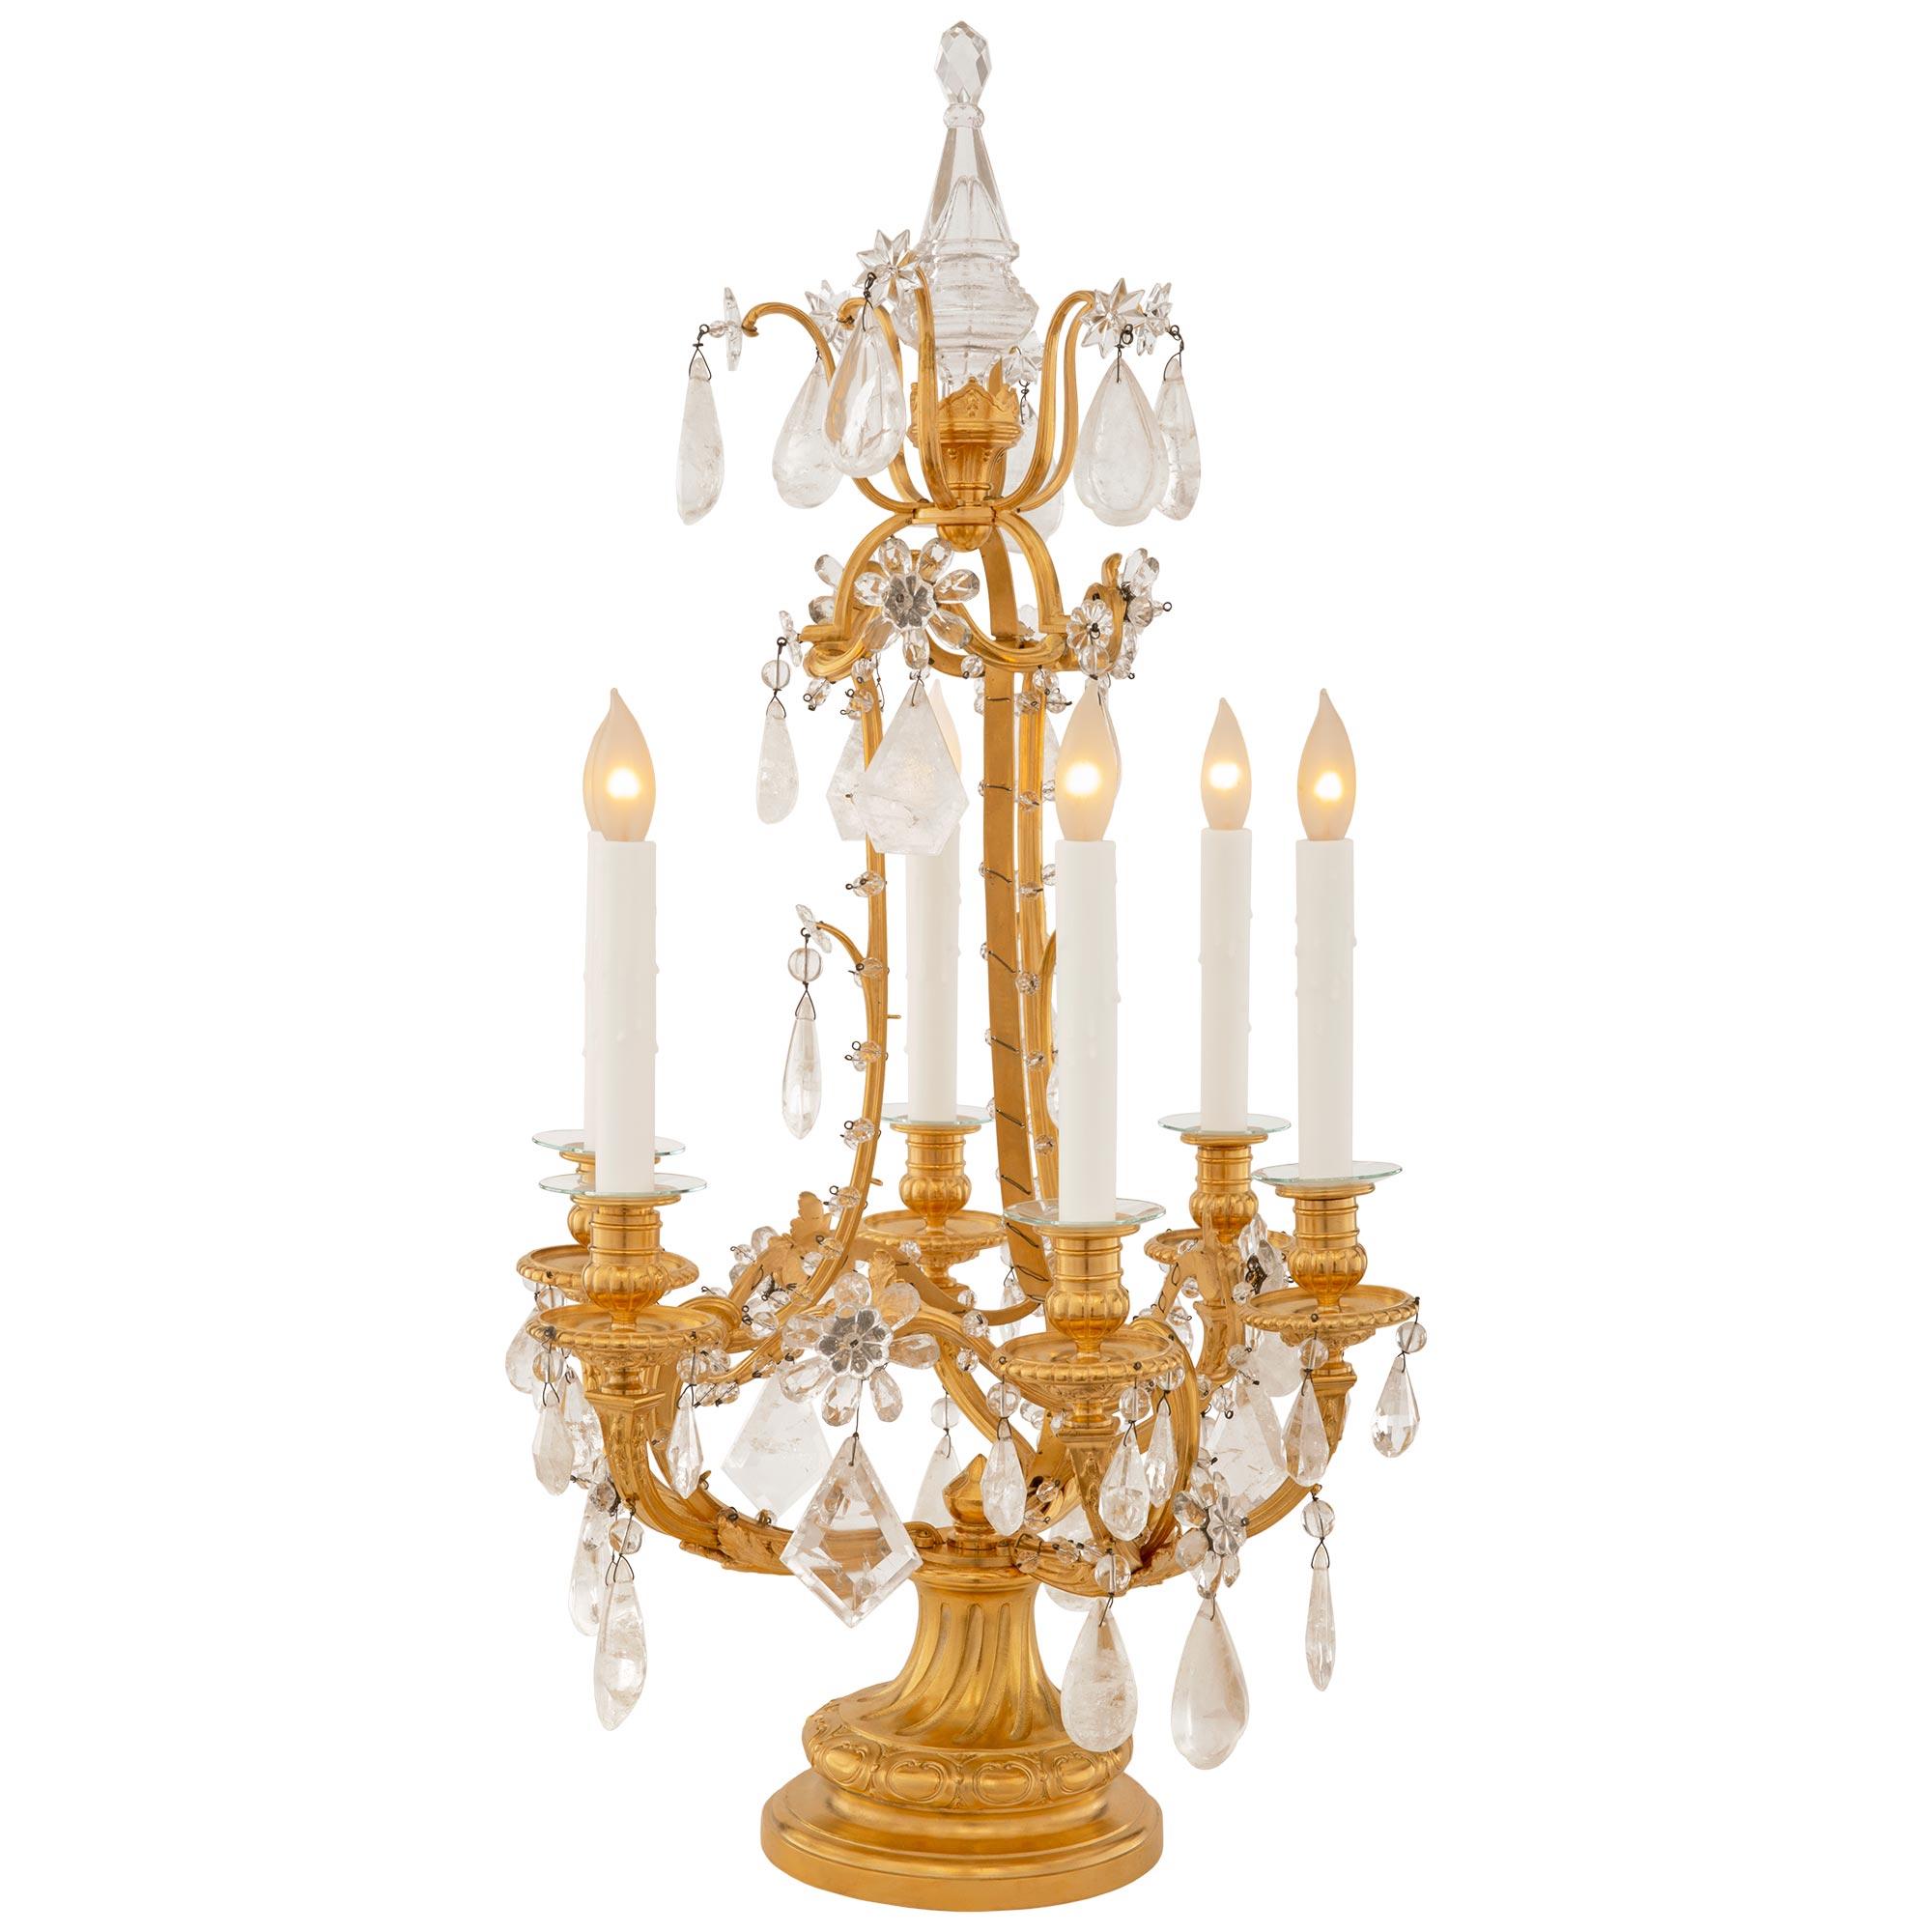 Ein atemberaubendes und qualitativ hochwertiges Paar französischer Louis-XVI-Lampen aus dem 19. Bergkristall und Kristall Girandole Lampen. Jede sechsflammige Girandole steht auf einem runden Ormolu-Sockel mit gesprenkeltem Rand unter einem leicht